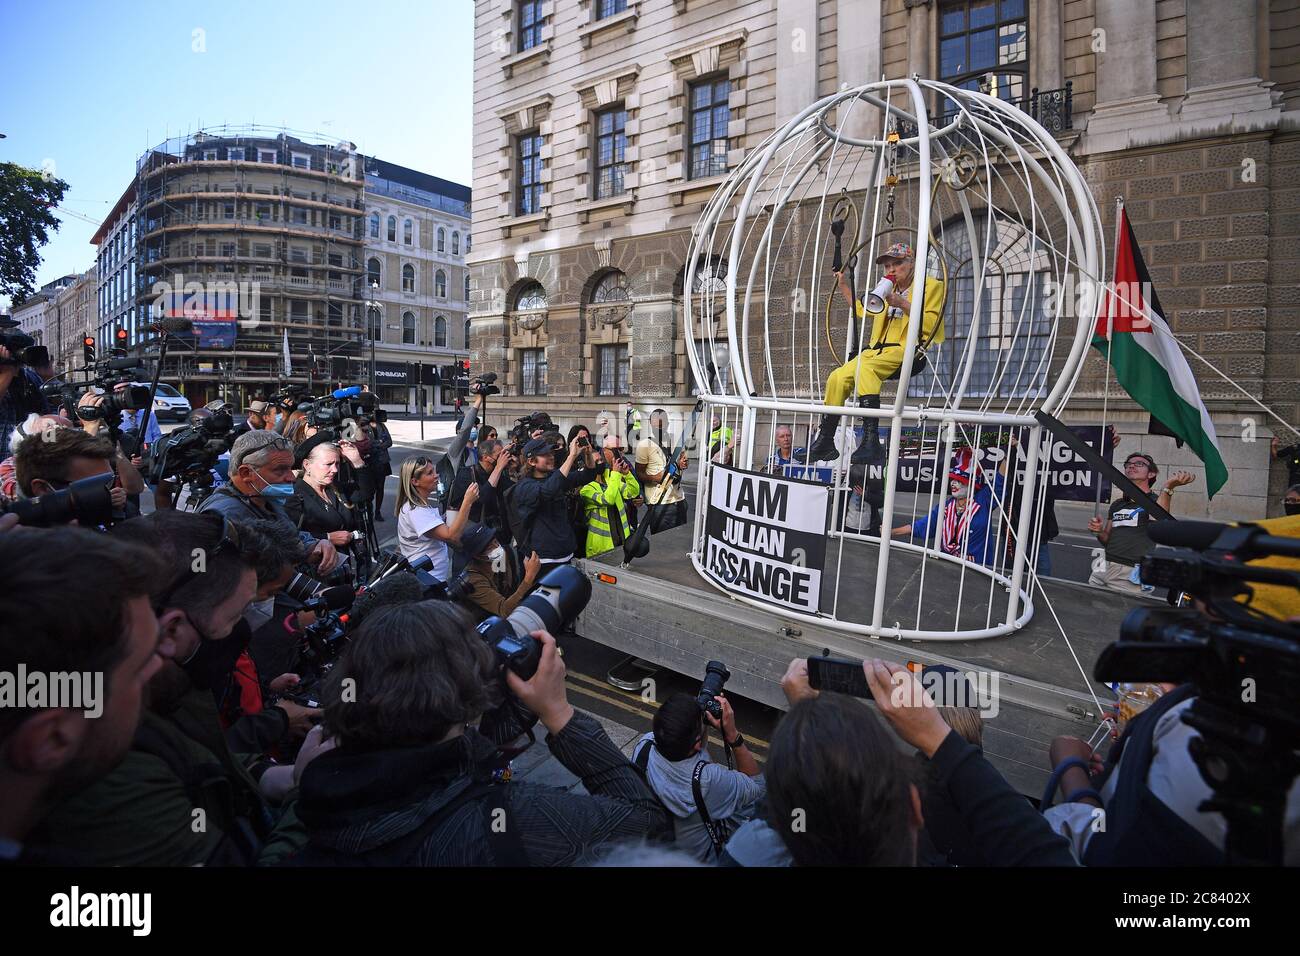 La couturière et femme d'affaires Dame Vivienne Westwood est suspendue dans une cage d'oiseaux de dix pieds de haut devant le Old Bailey à Londres pour protester contre l'extradition américaine de Julian Assange. Banque D'Images